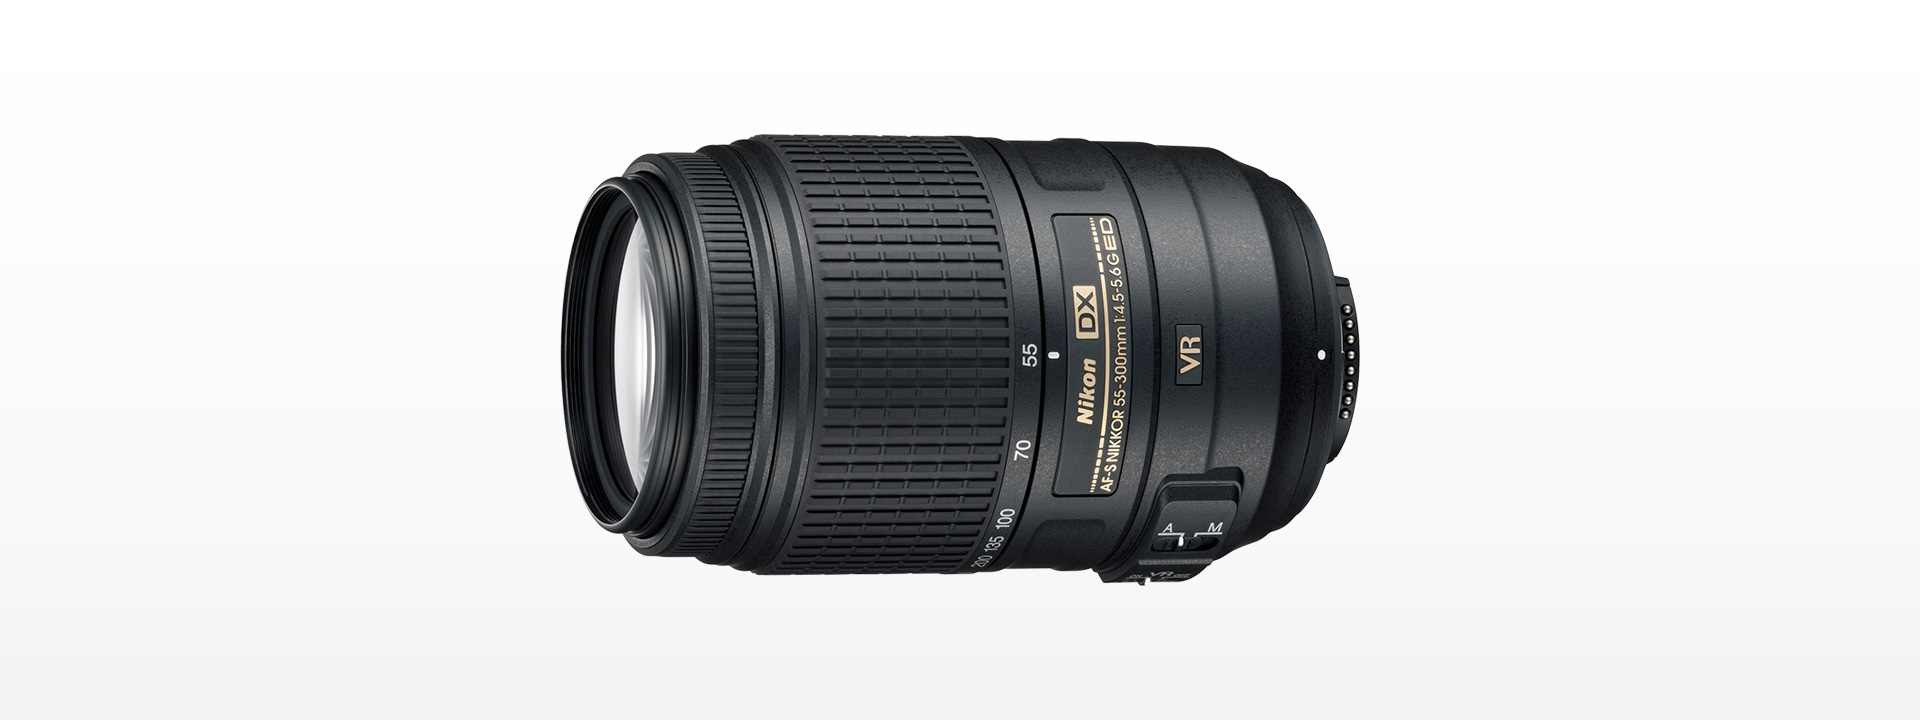 即日発送 Nikon VR望遠レンズ ED 55-300F4.5-5.6G DX AF-S その他